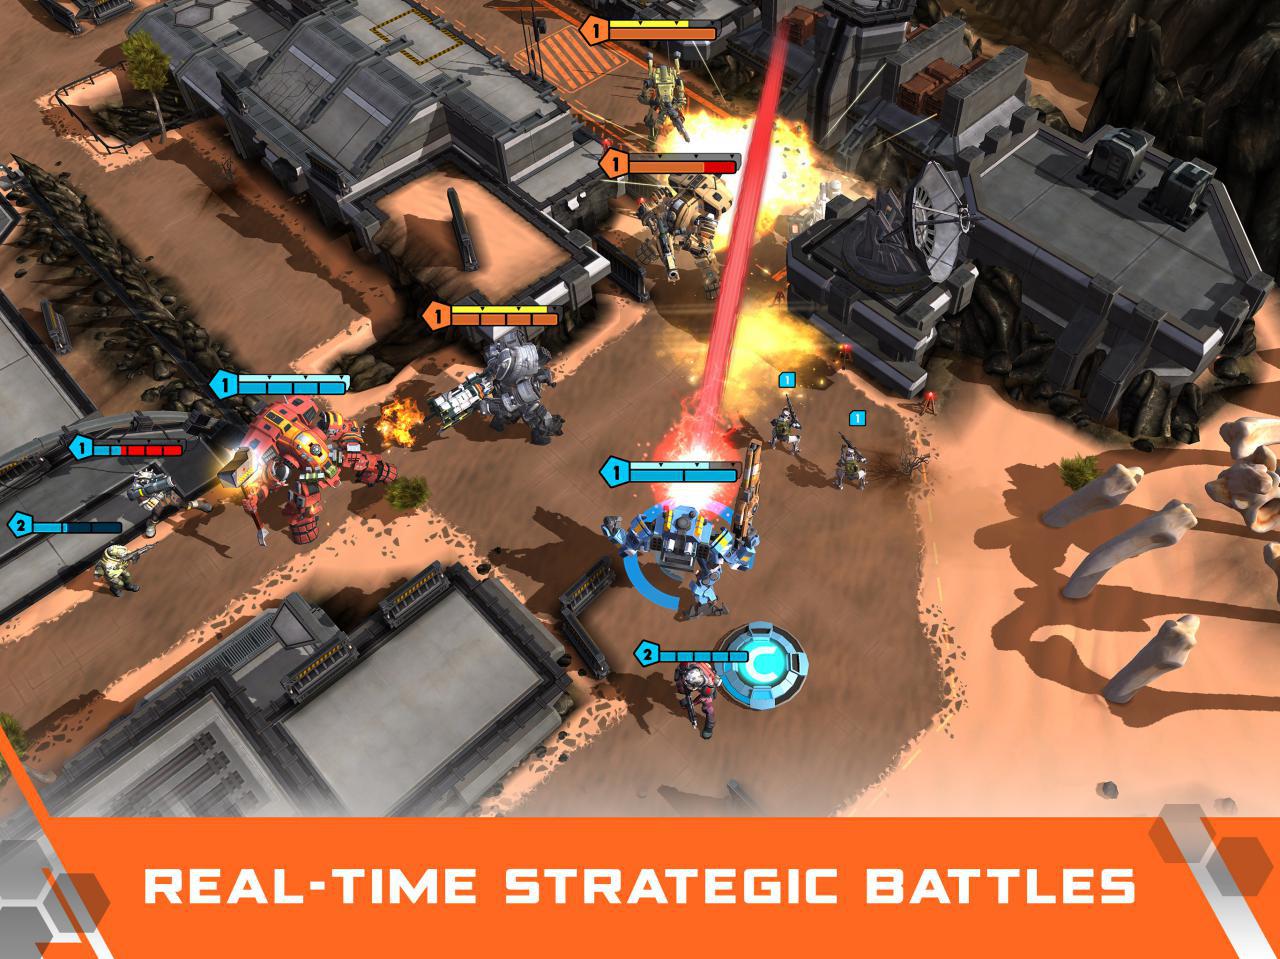 بازی جدید و استراتژیک Titanfall برای پلتفرم موبایل معرفی شد